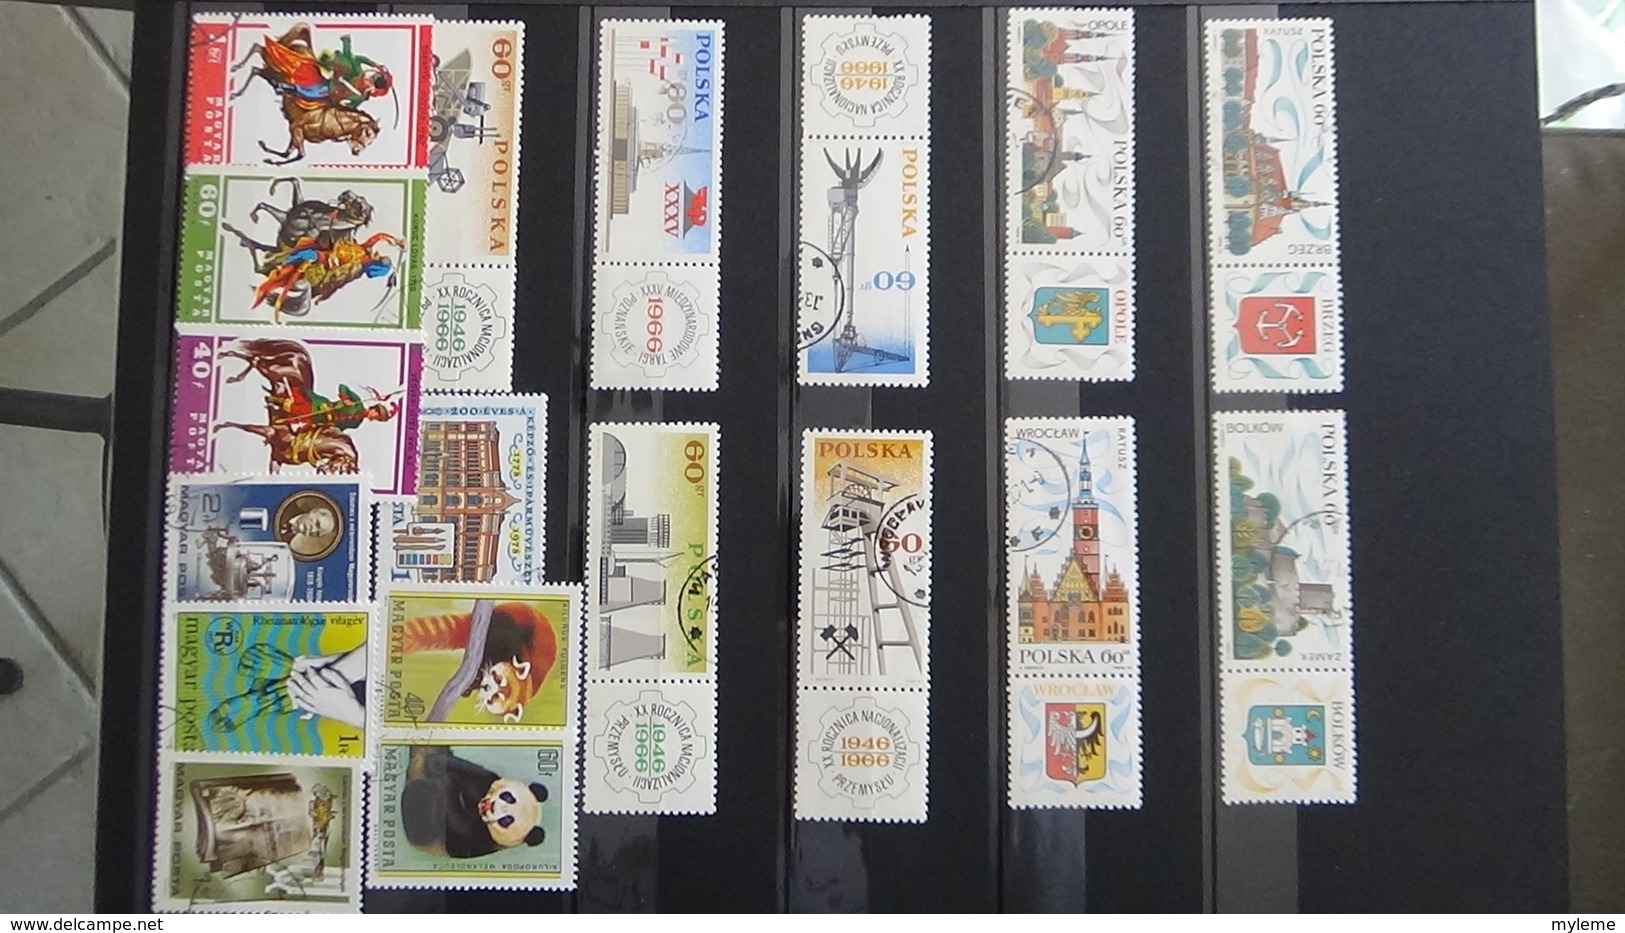 Collection de timbres oblitérés du monde dont bonnes valeurs de France. Port offert à partir de 50 euros d'achat.